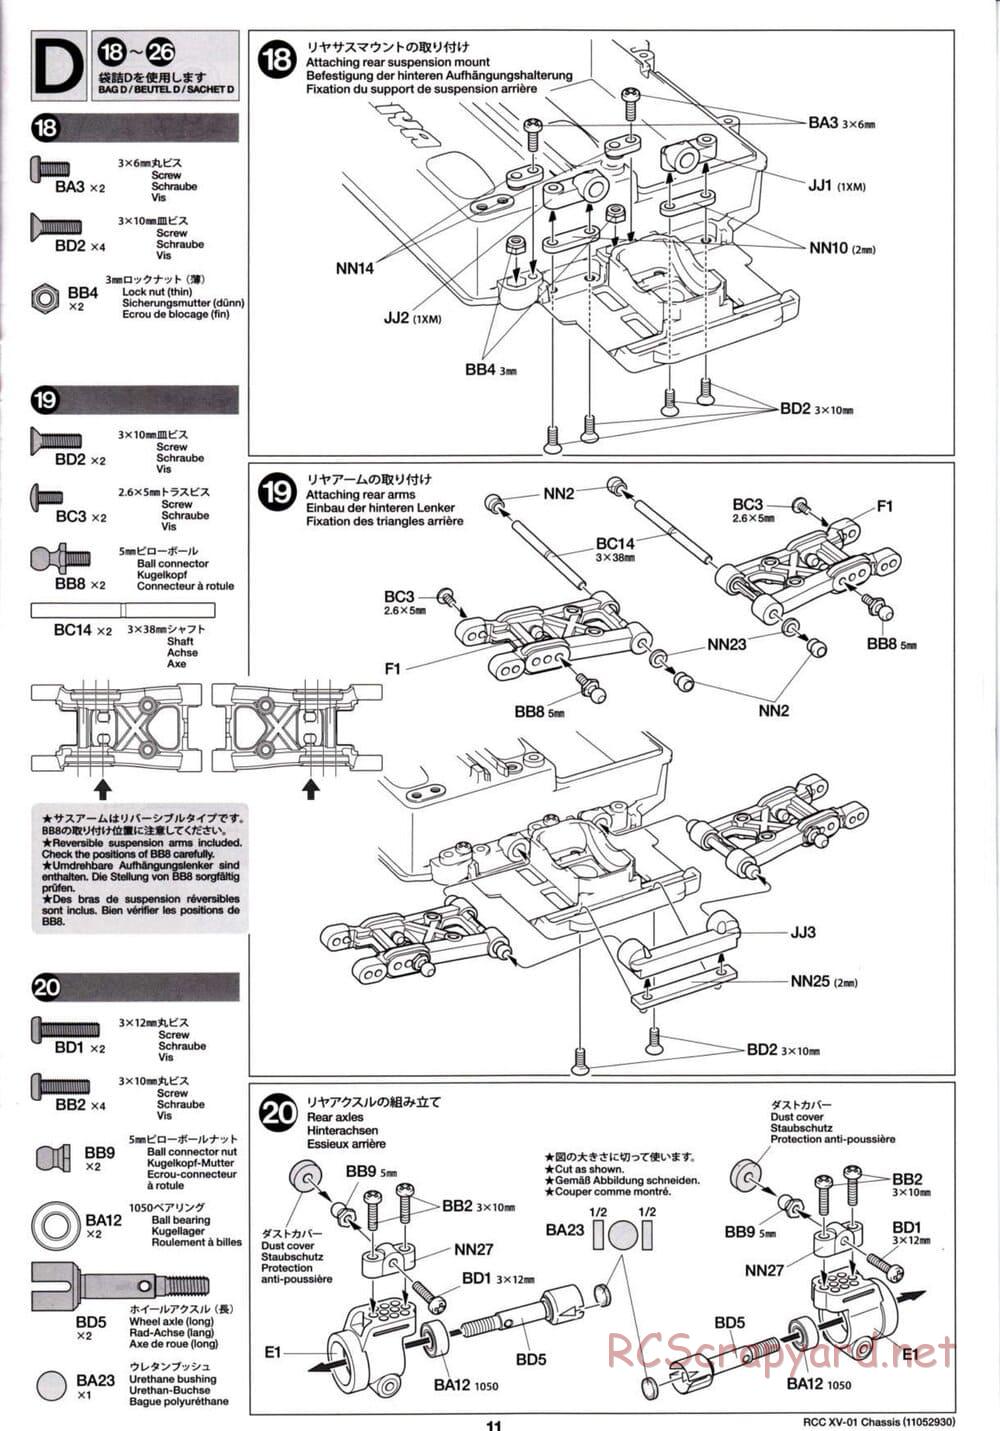 Tamiya - XV-01 Chassis - Manual - Page 11